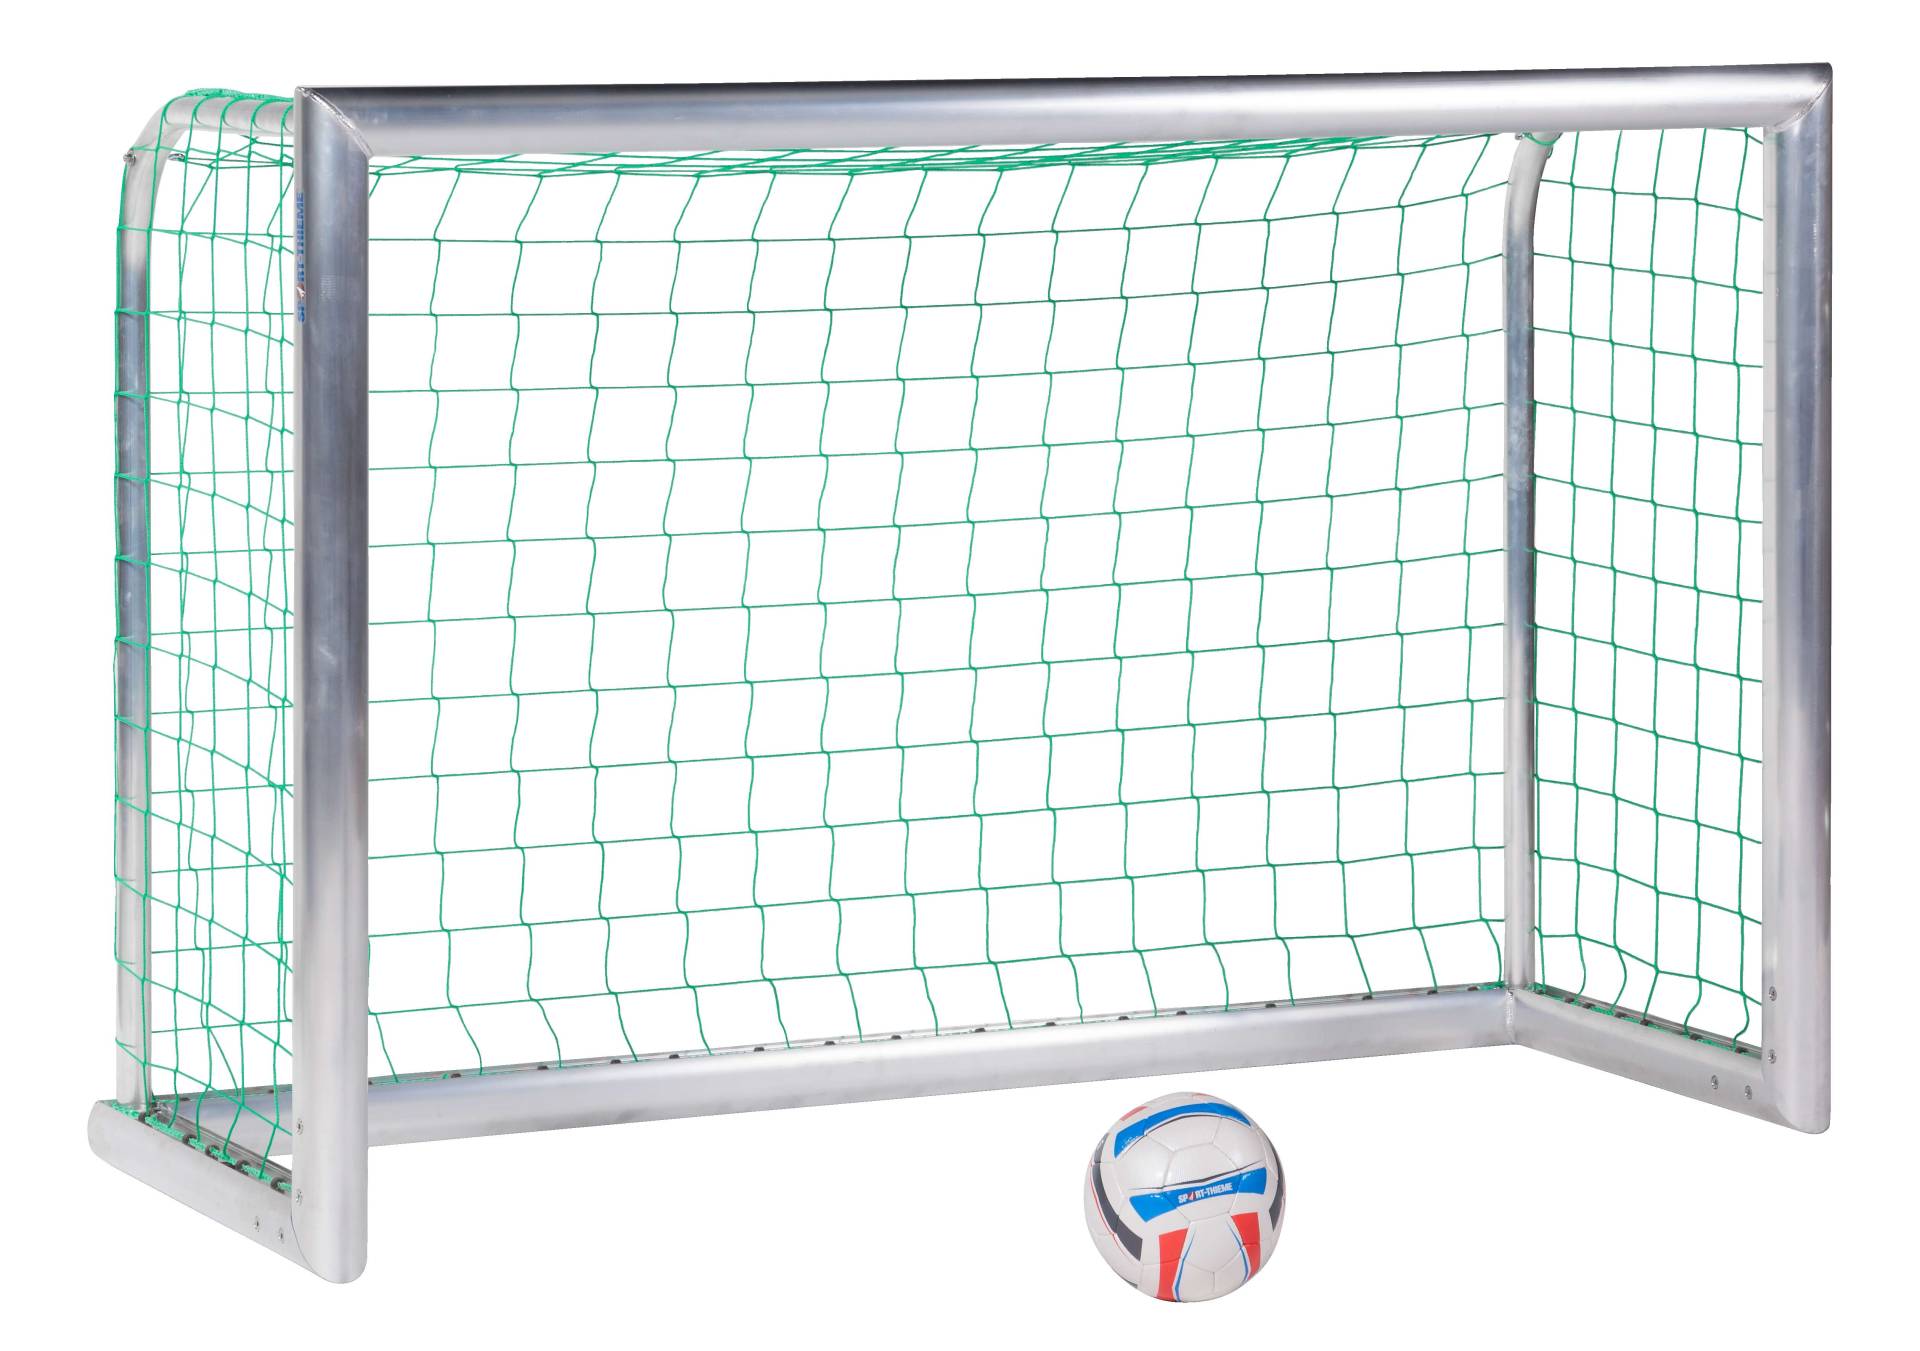 Sport-Thieme Mini-Fußballtor "Professional Kompakt", Alu-Naturblank, Inkl. Netz, grün (MW 10 cm), 1,80x1,20 m von Sport-Thieme